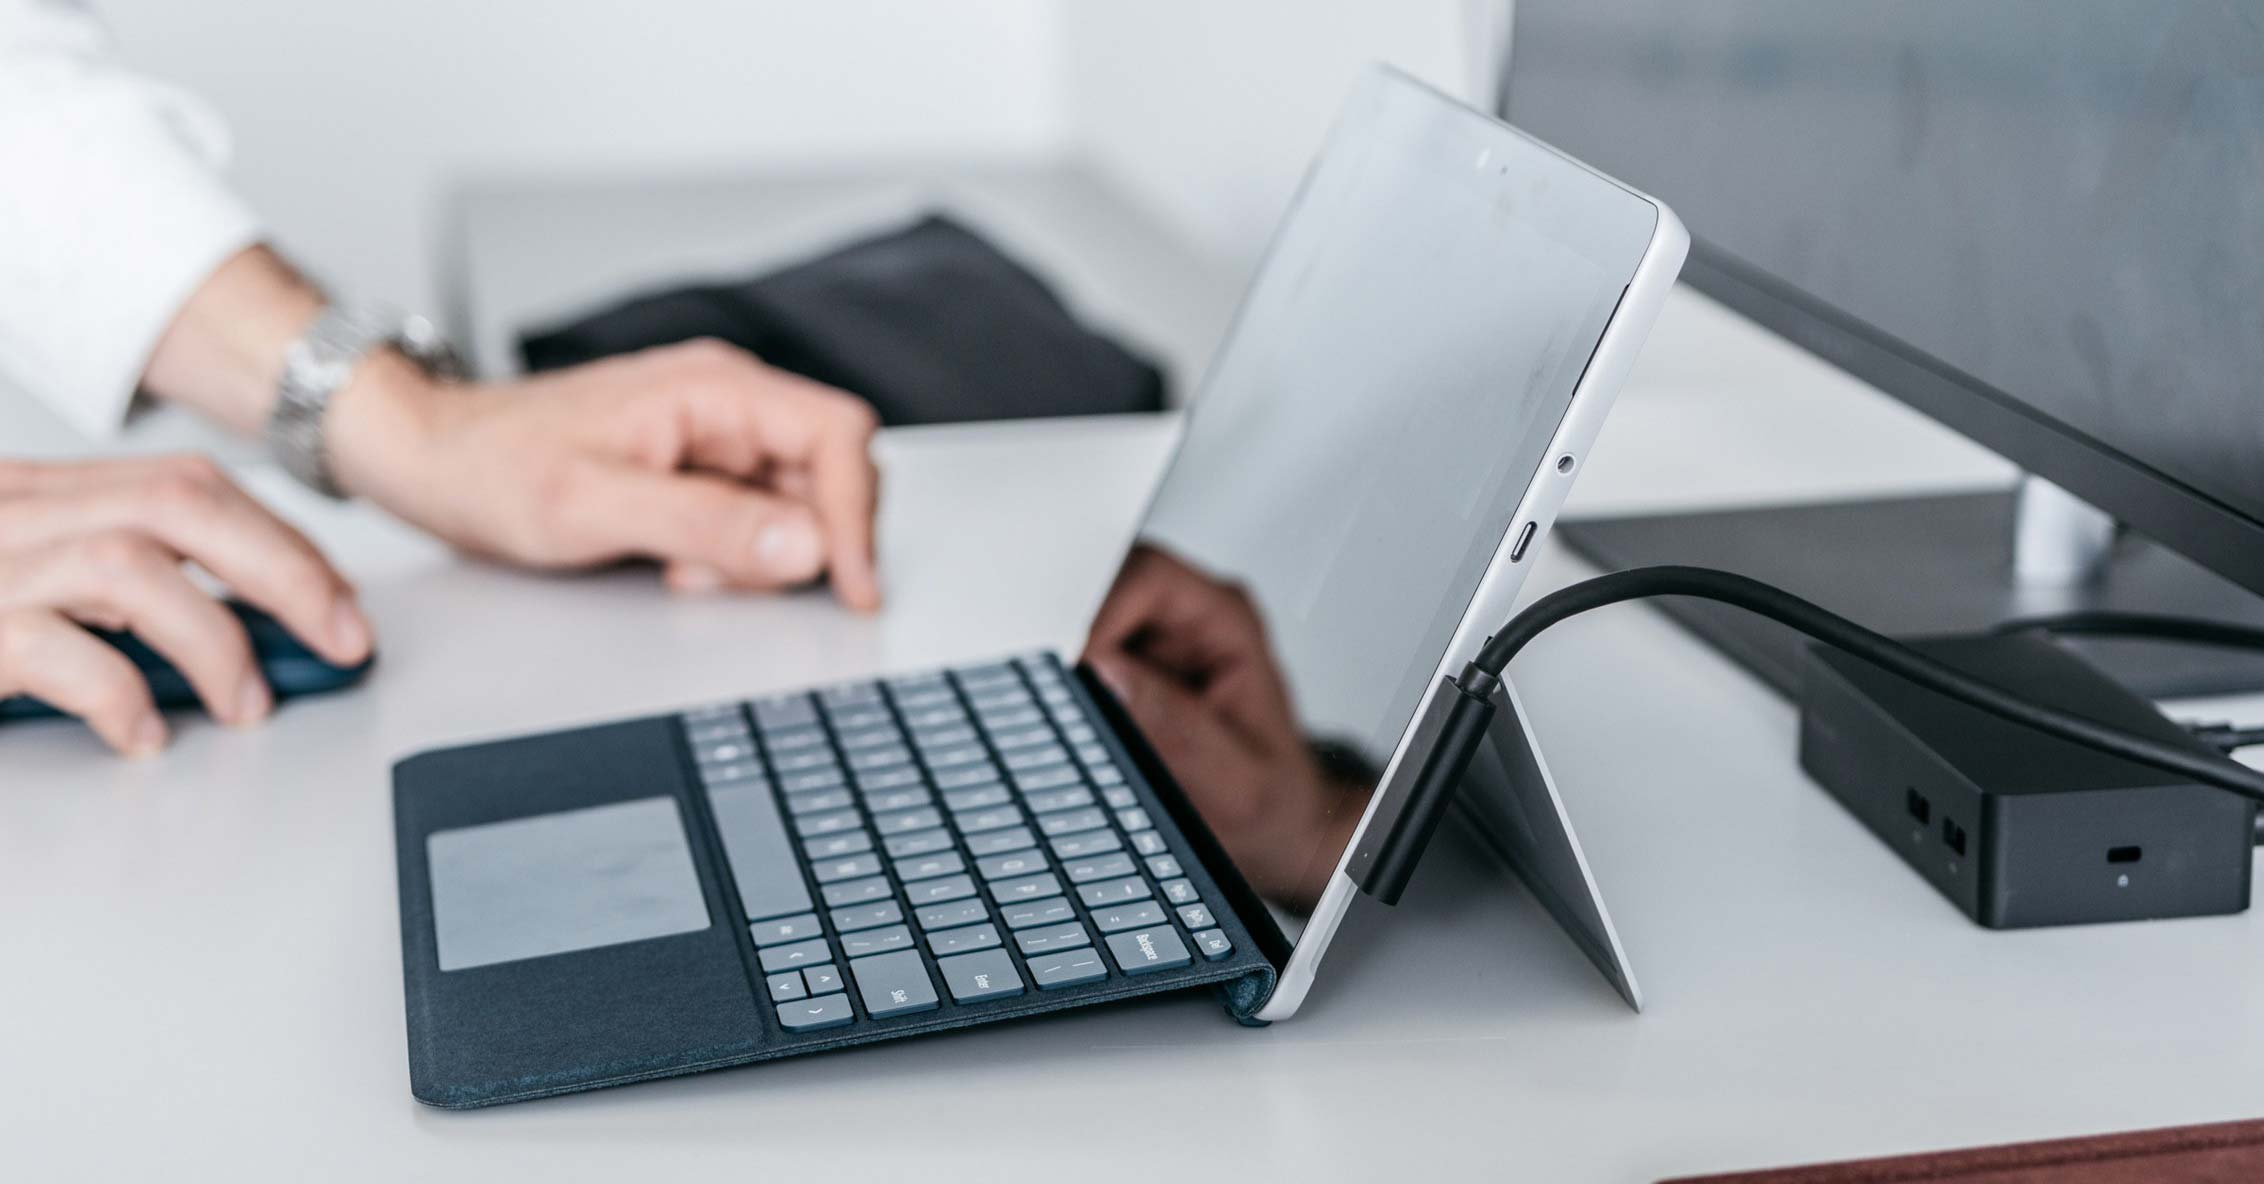 Surface Go - ván cược lớn của Microsoft vào một cái máy tính nhỏ tí nhưng liệu có thành công?